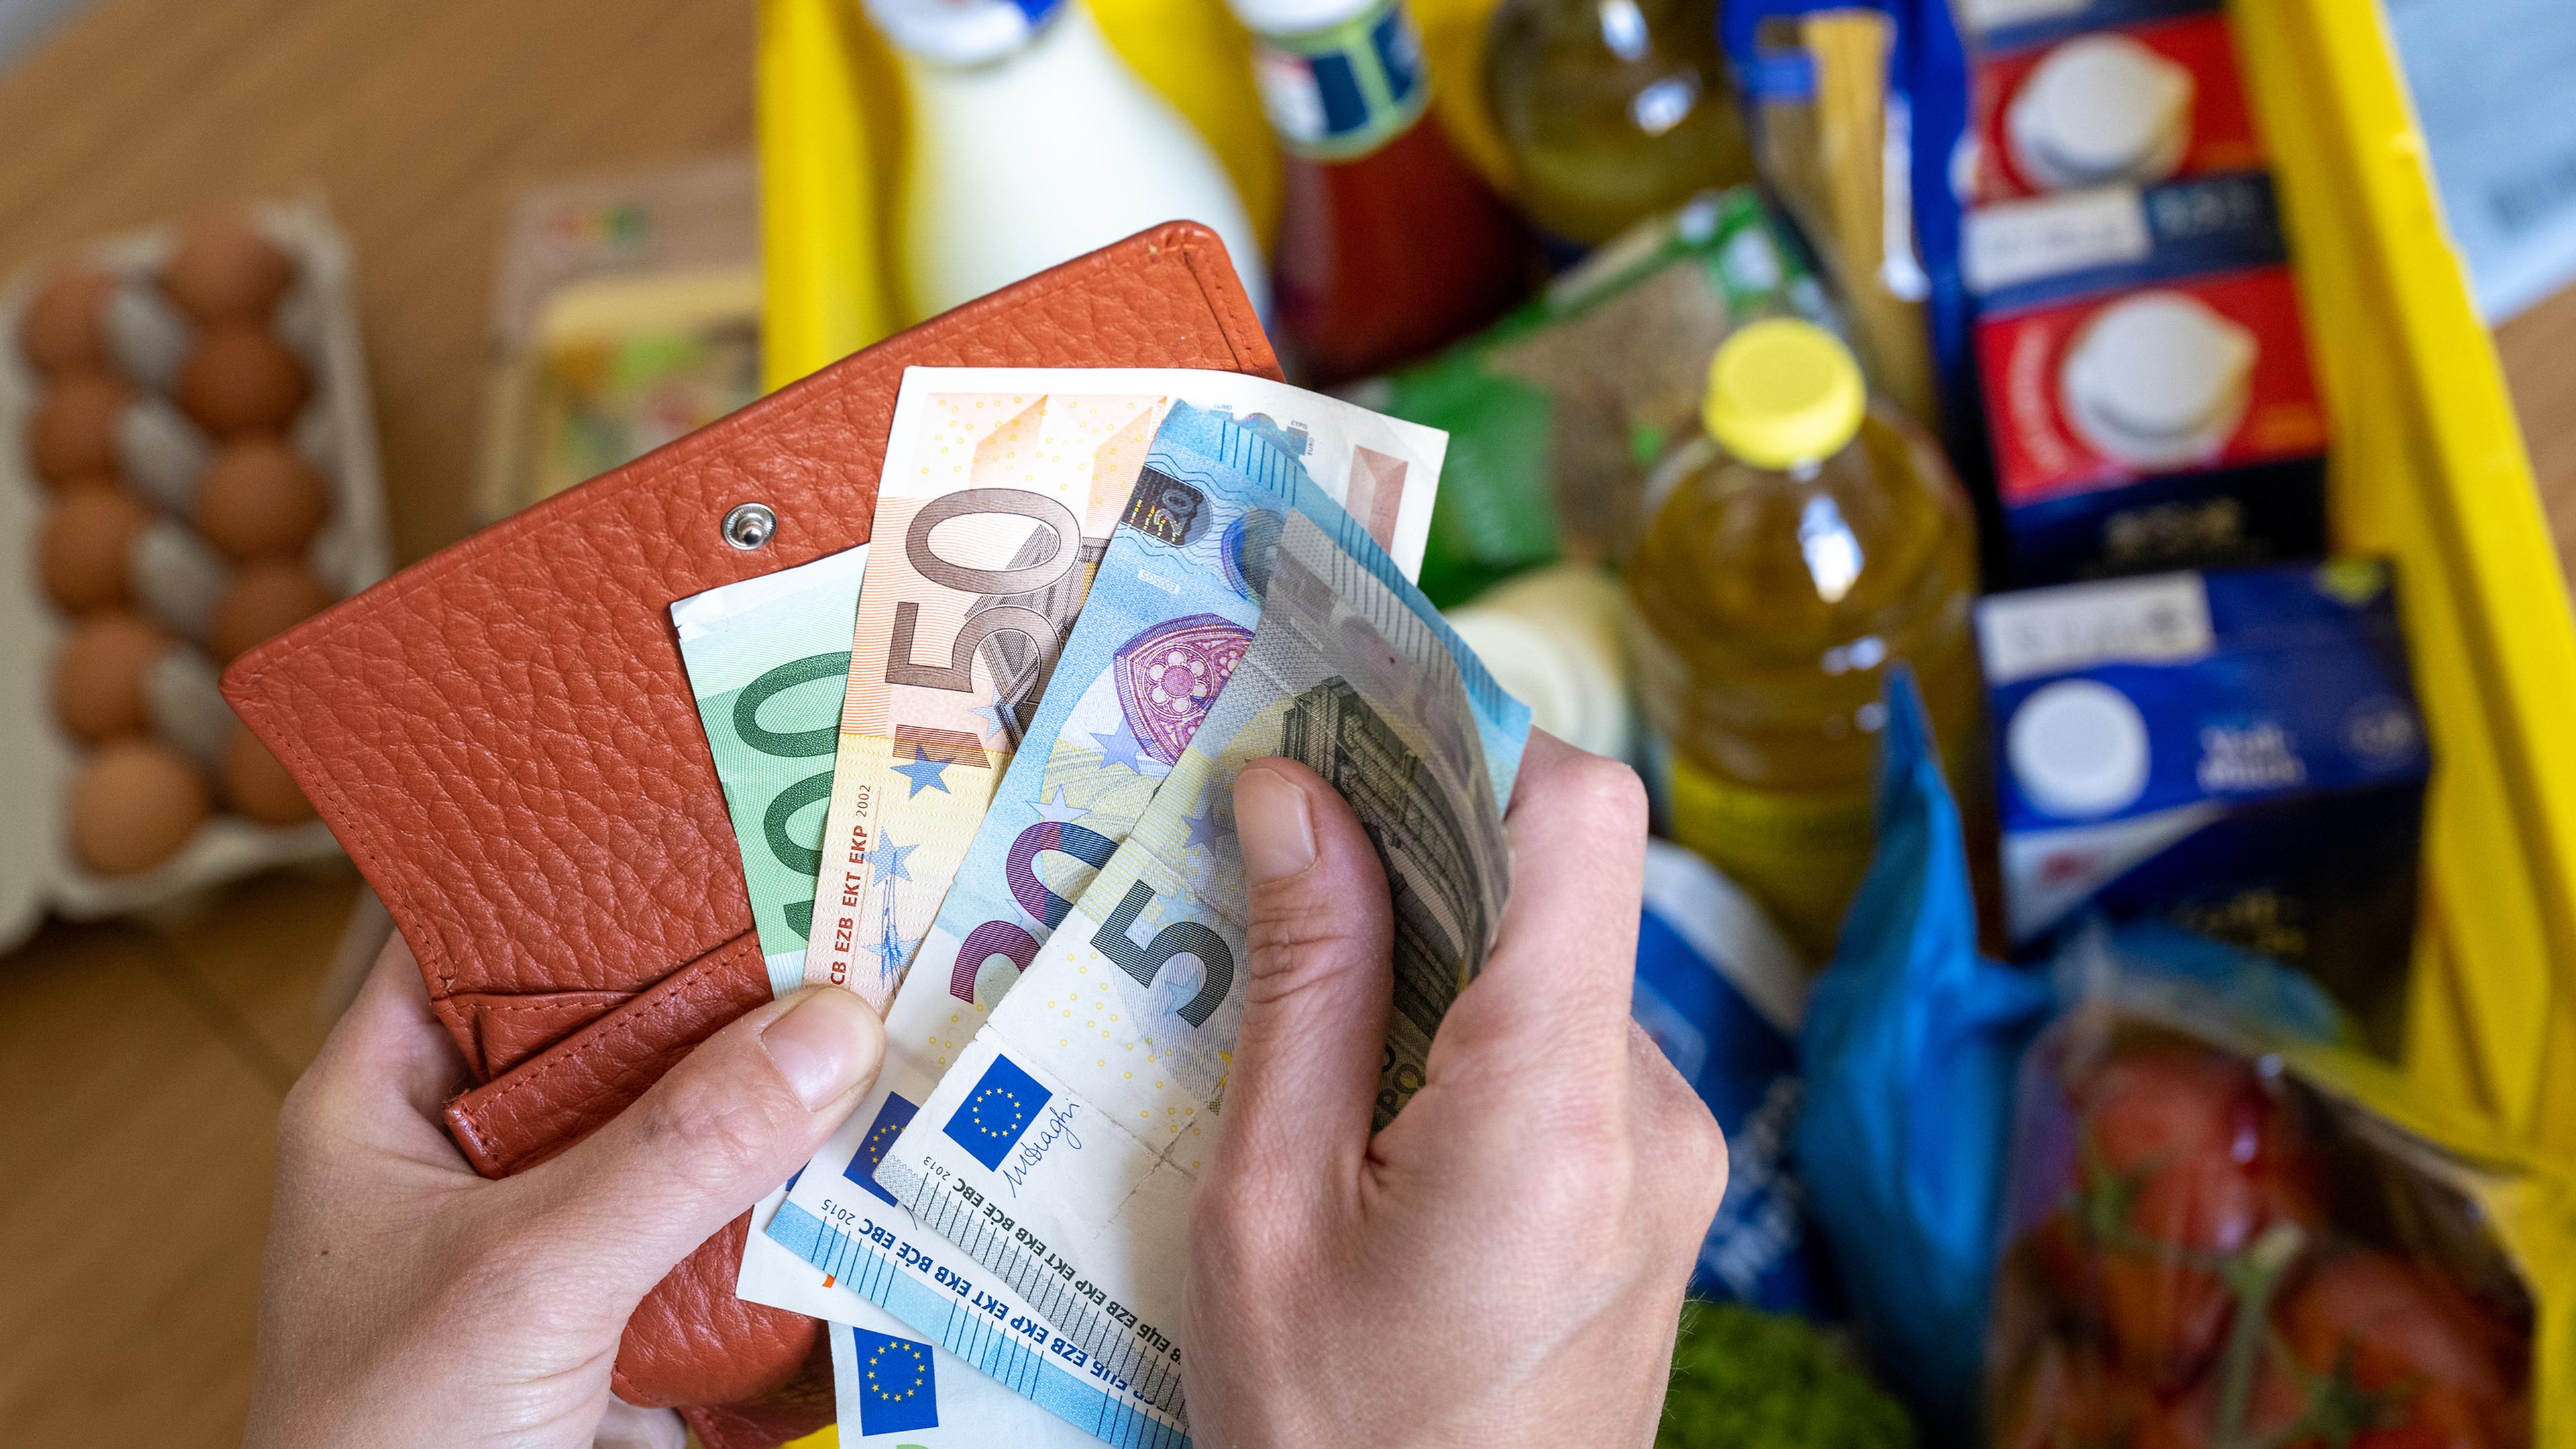 Les courses alimentaires plus chères en France qu'ailleurs en Europe ?